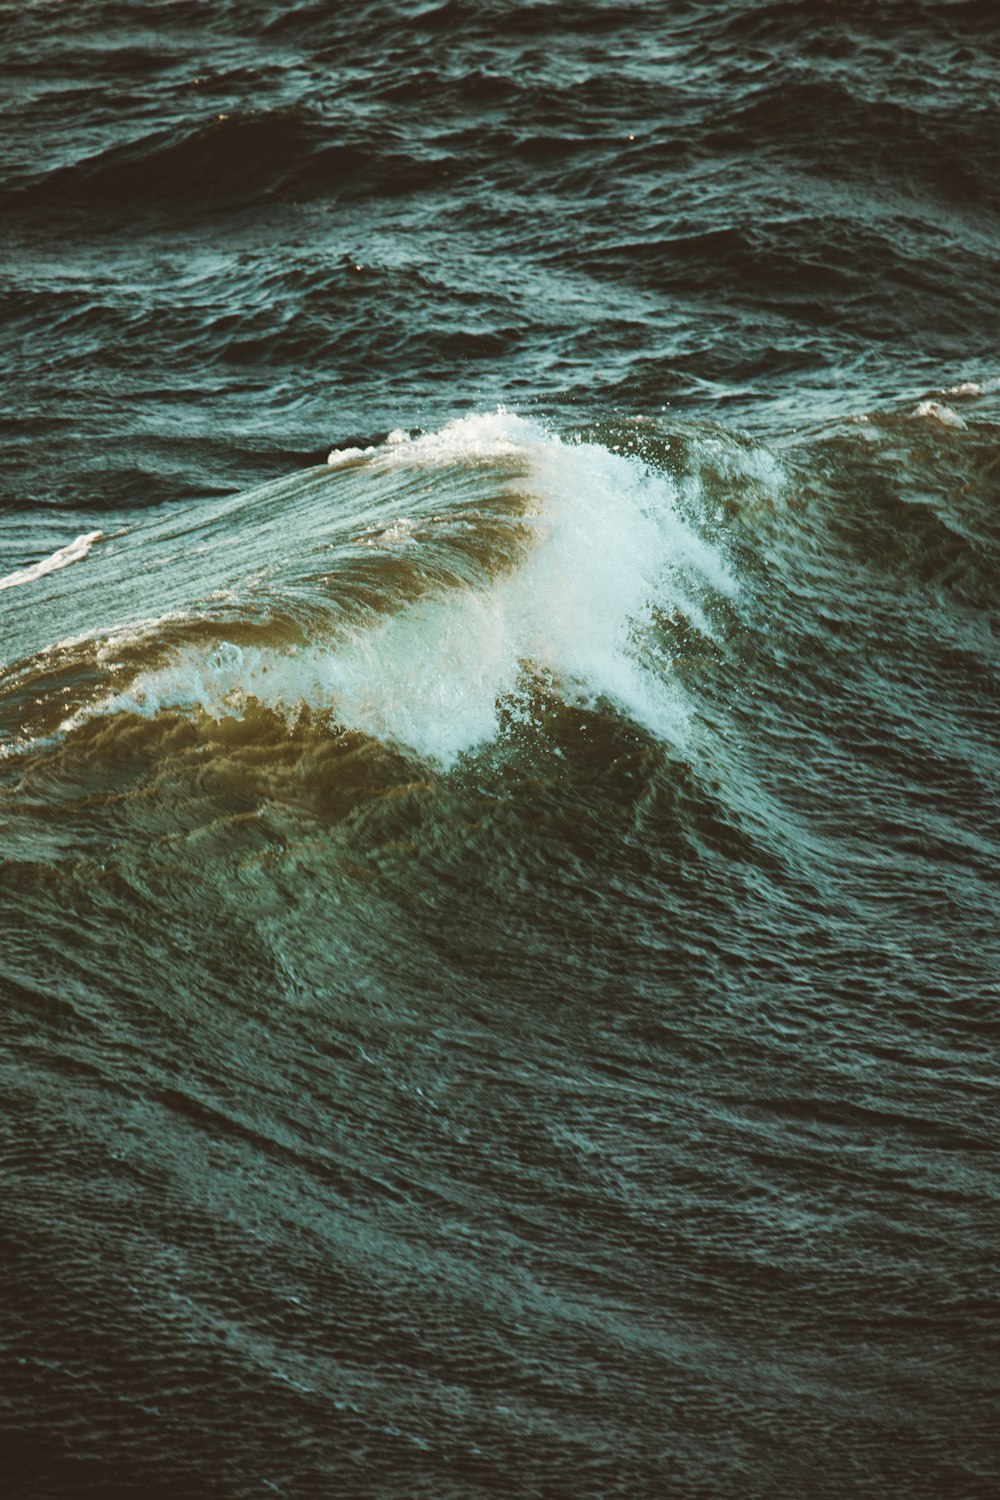 海の波